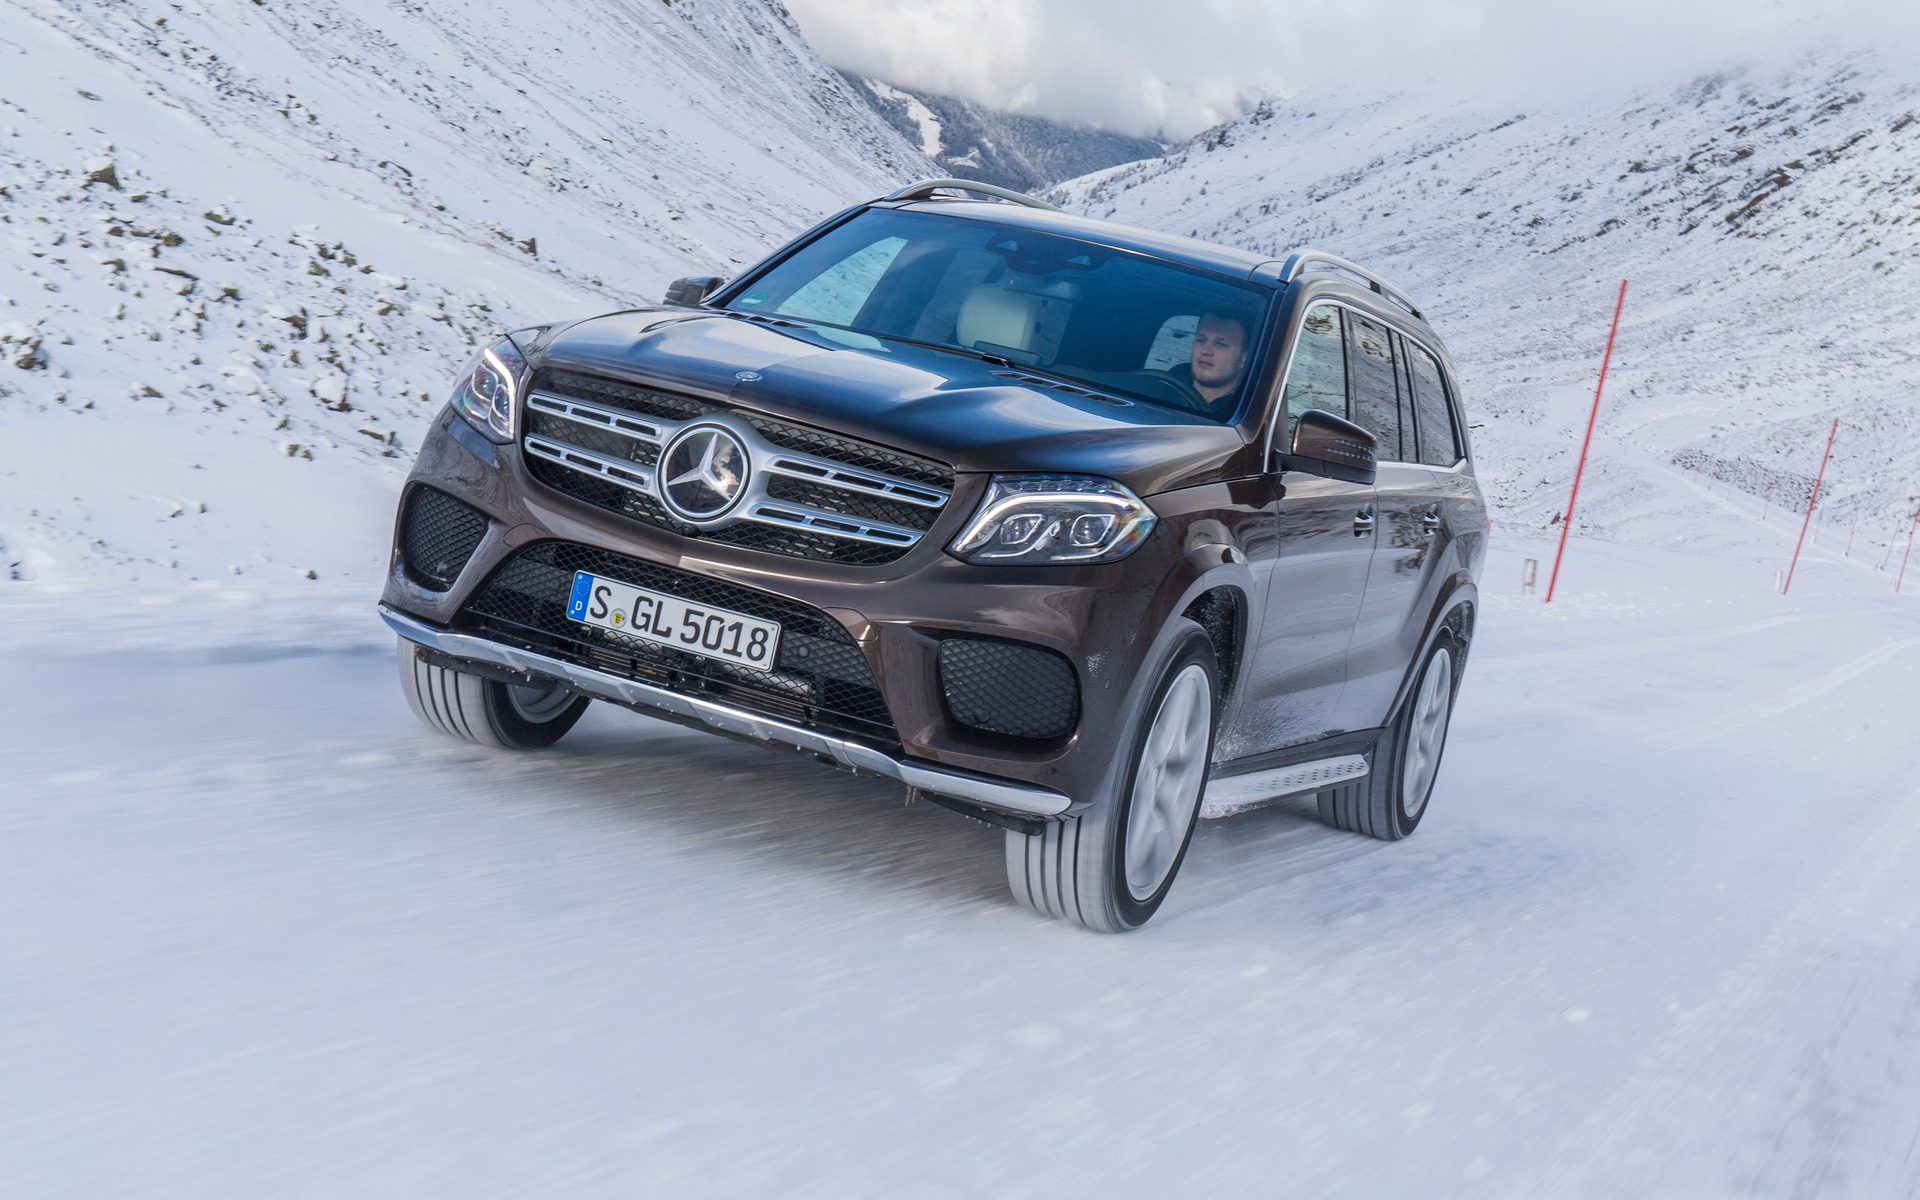 Essayer une Mercedes dans les Alpes: Check